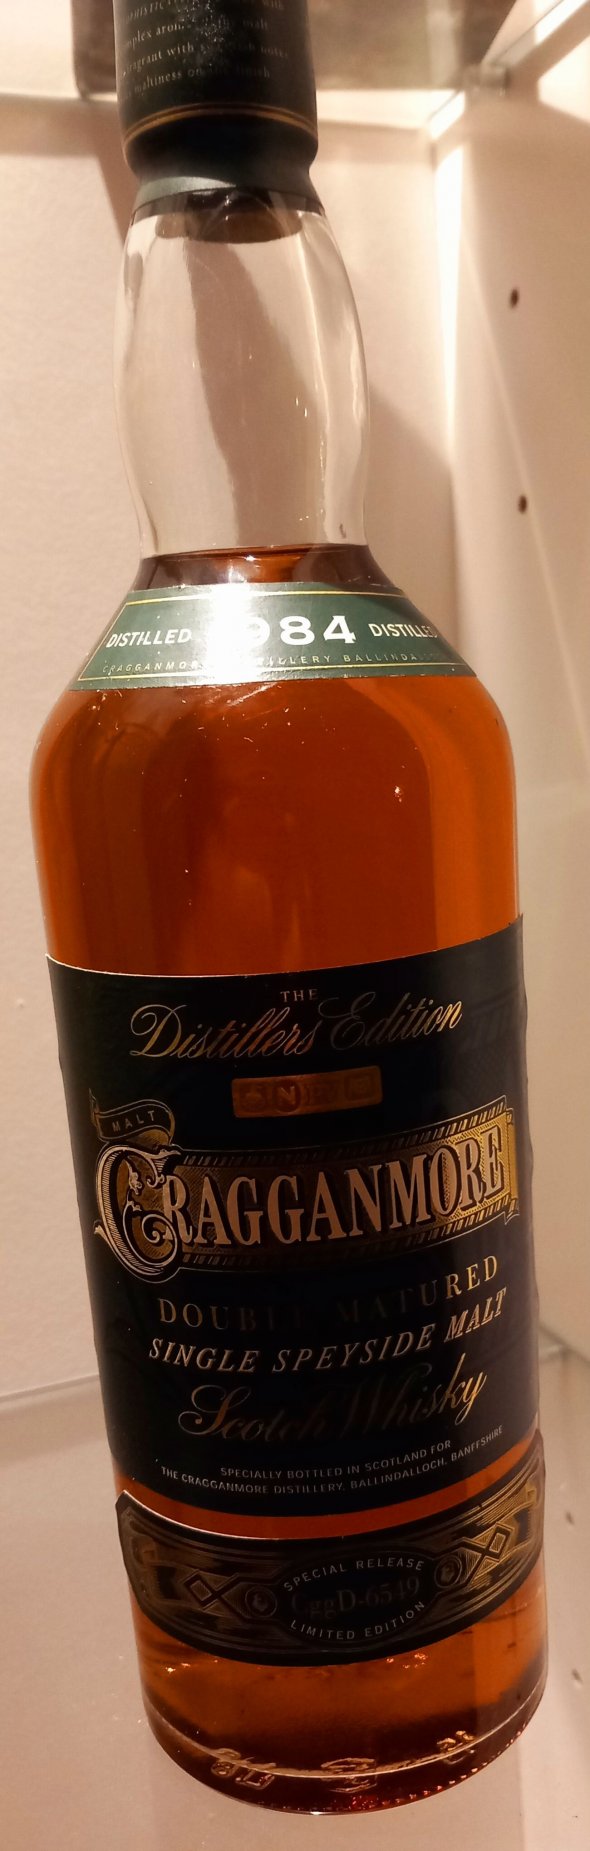 Cragganmore 1984 Edition